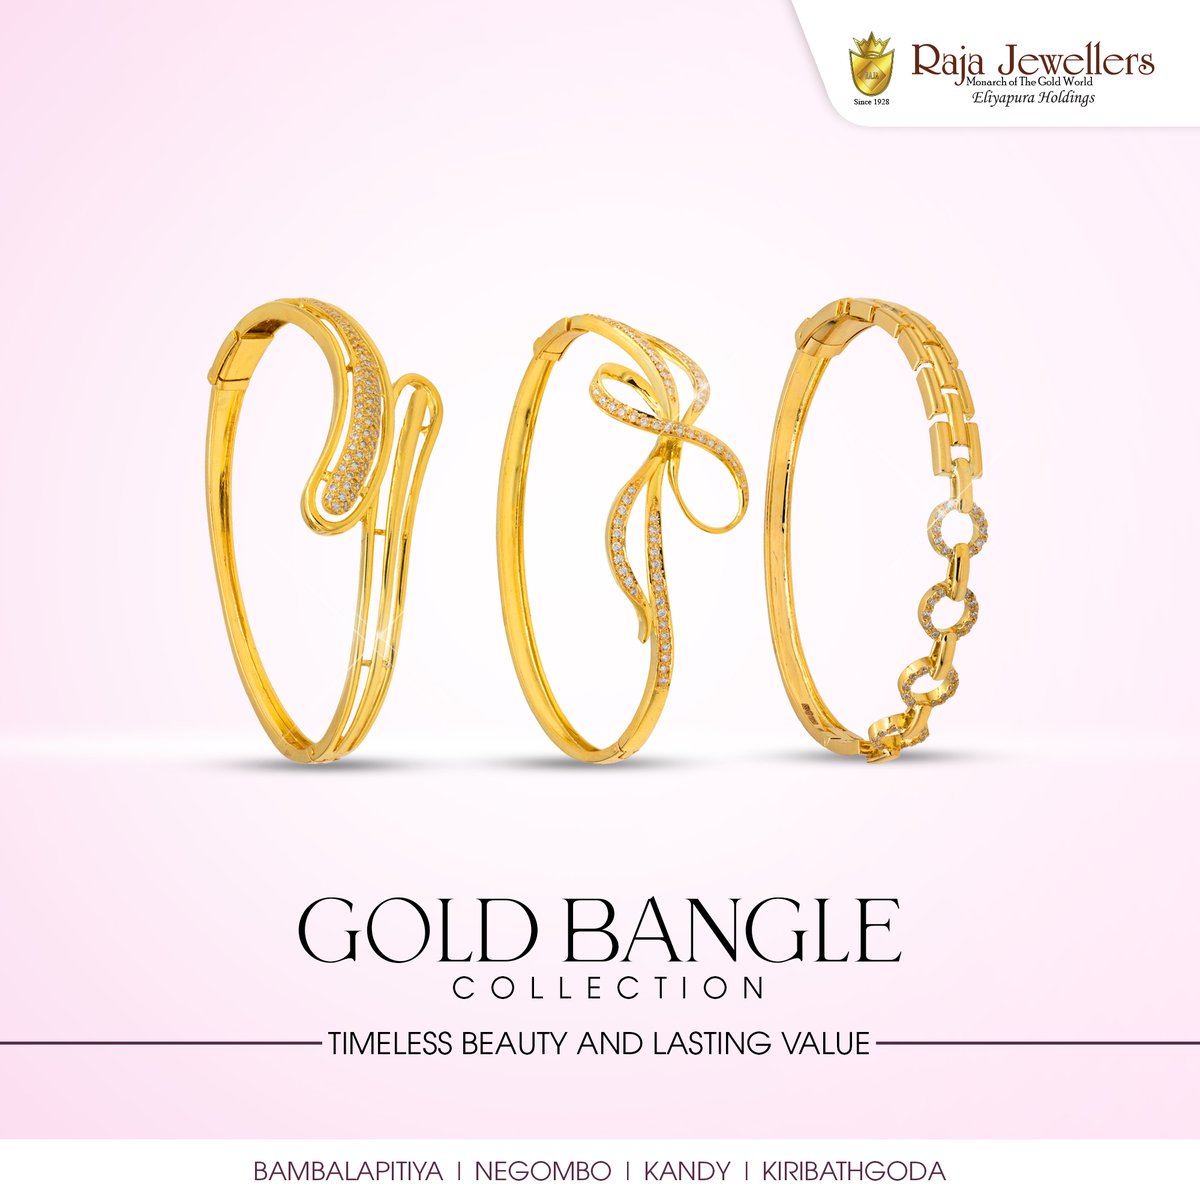 𝗧𝗶𝗺𝗲𝗹𝗲𝘀𝘀 𝗯𝗲𝗮𝘂𝘁𝘆 𝗮𝗻𝗱 𝗹𝗮𝘀𝘁𝗶𝗻𝗴 𝘃𝗮𝗹𝘂𝗲!
Explore our stunning Gold Bangle Collection today.
#RajaJewellers #banglecollection #Bangle #broadbangle #goldbangles #InvestInStyle #lka #colombo #negombo #kandy #kiribathgoda

Raja Jewellers - By Eliyapura